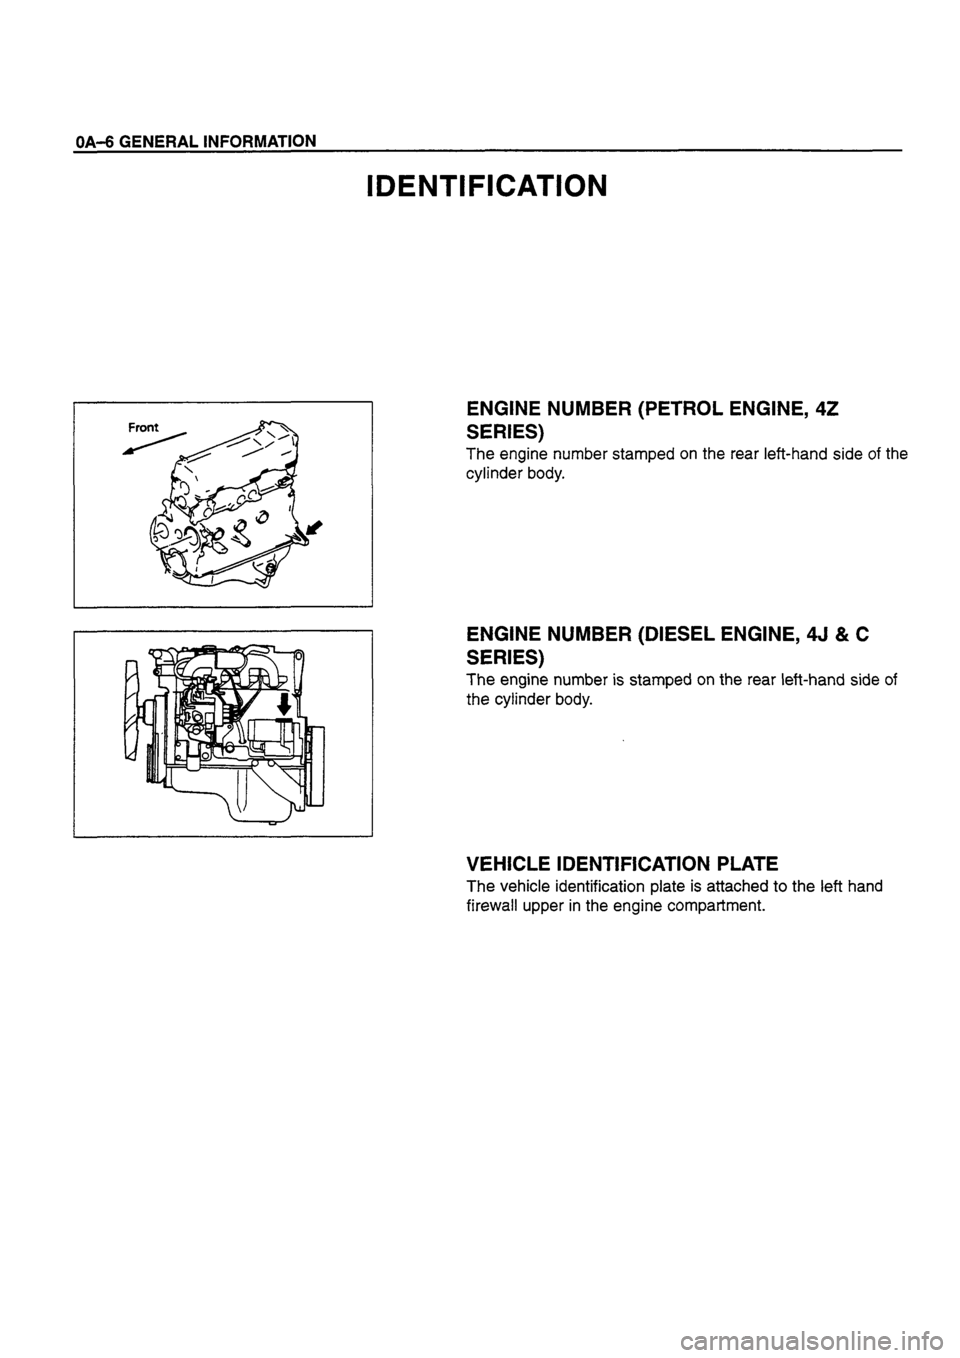 ISUZU TF SERIES 1993  Workshop Manual 